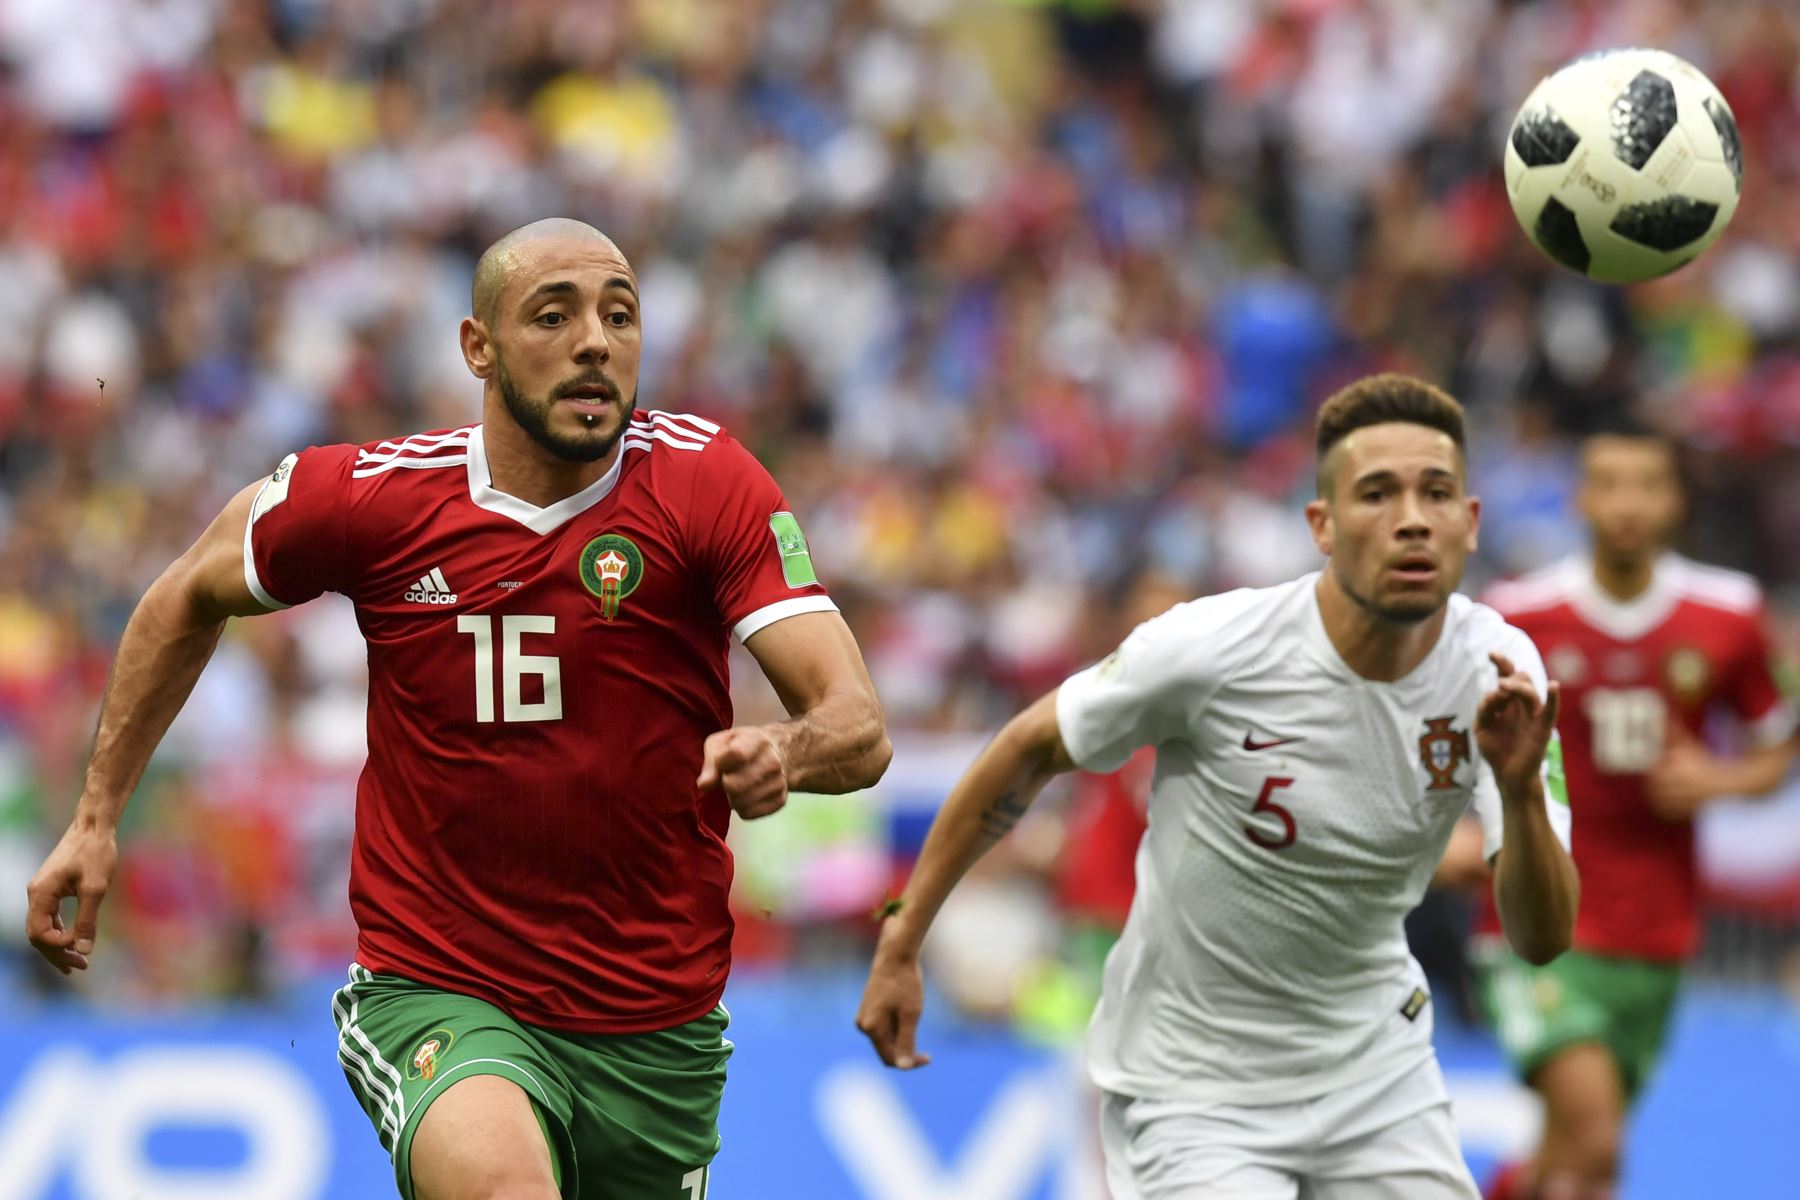 El delantero marroquí Noureddine Amrabat (L) y el defensor portugués Raphael Guerreiro (R) observan el balón mientras corren durante el partido de fútbol del Grupo B de la Copa Mundial Rusia 2018 entre Portugal y Marruecos en el Estadio Luzhniki en Moscú el 20 de junio de 2018. / AFP